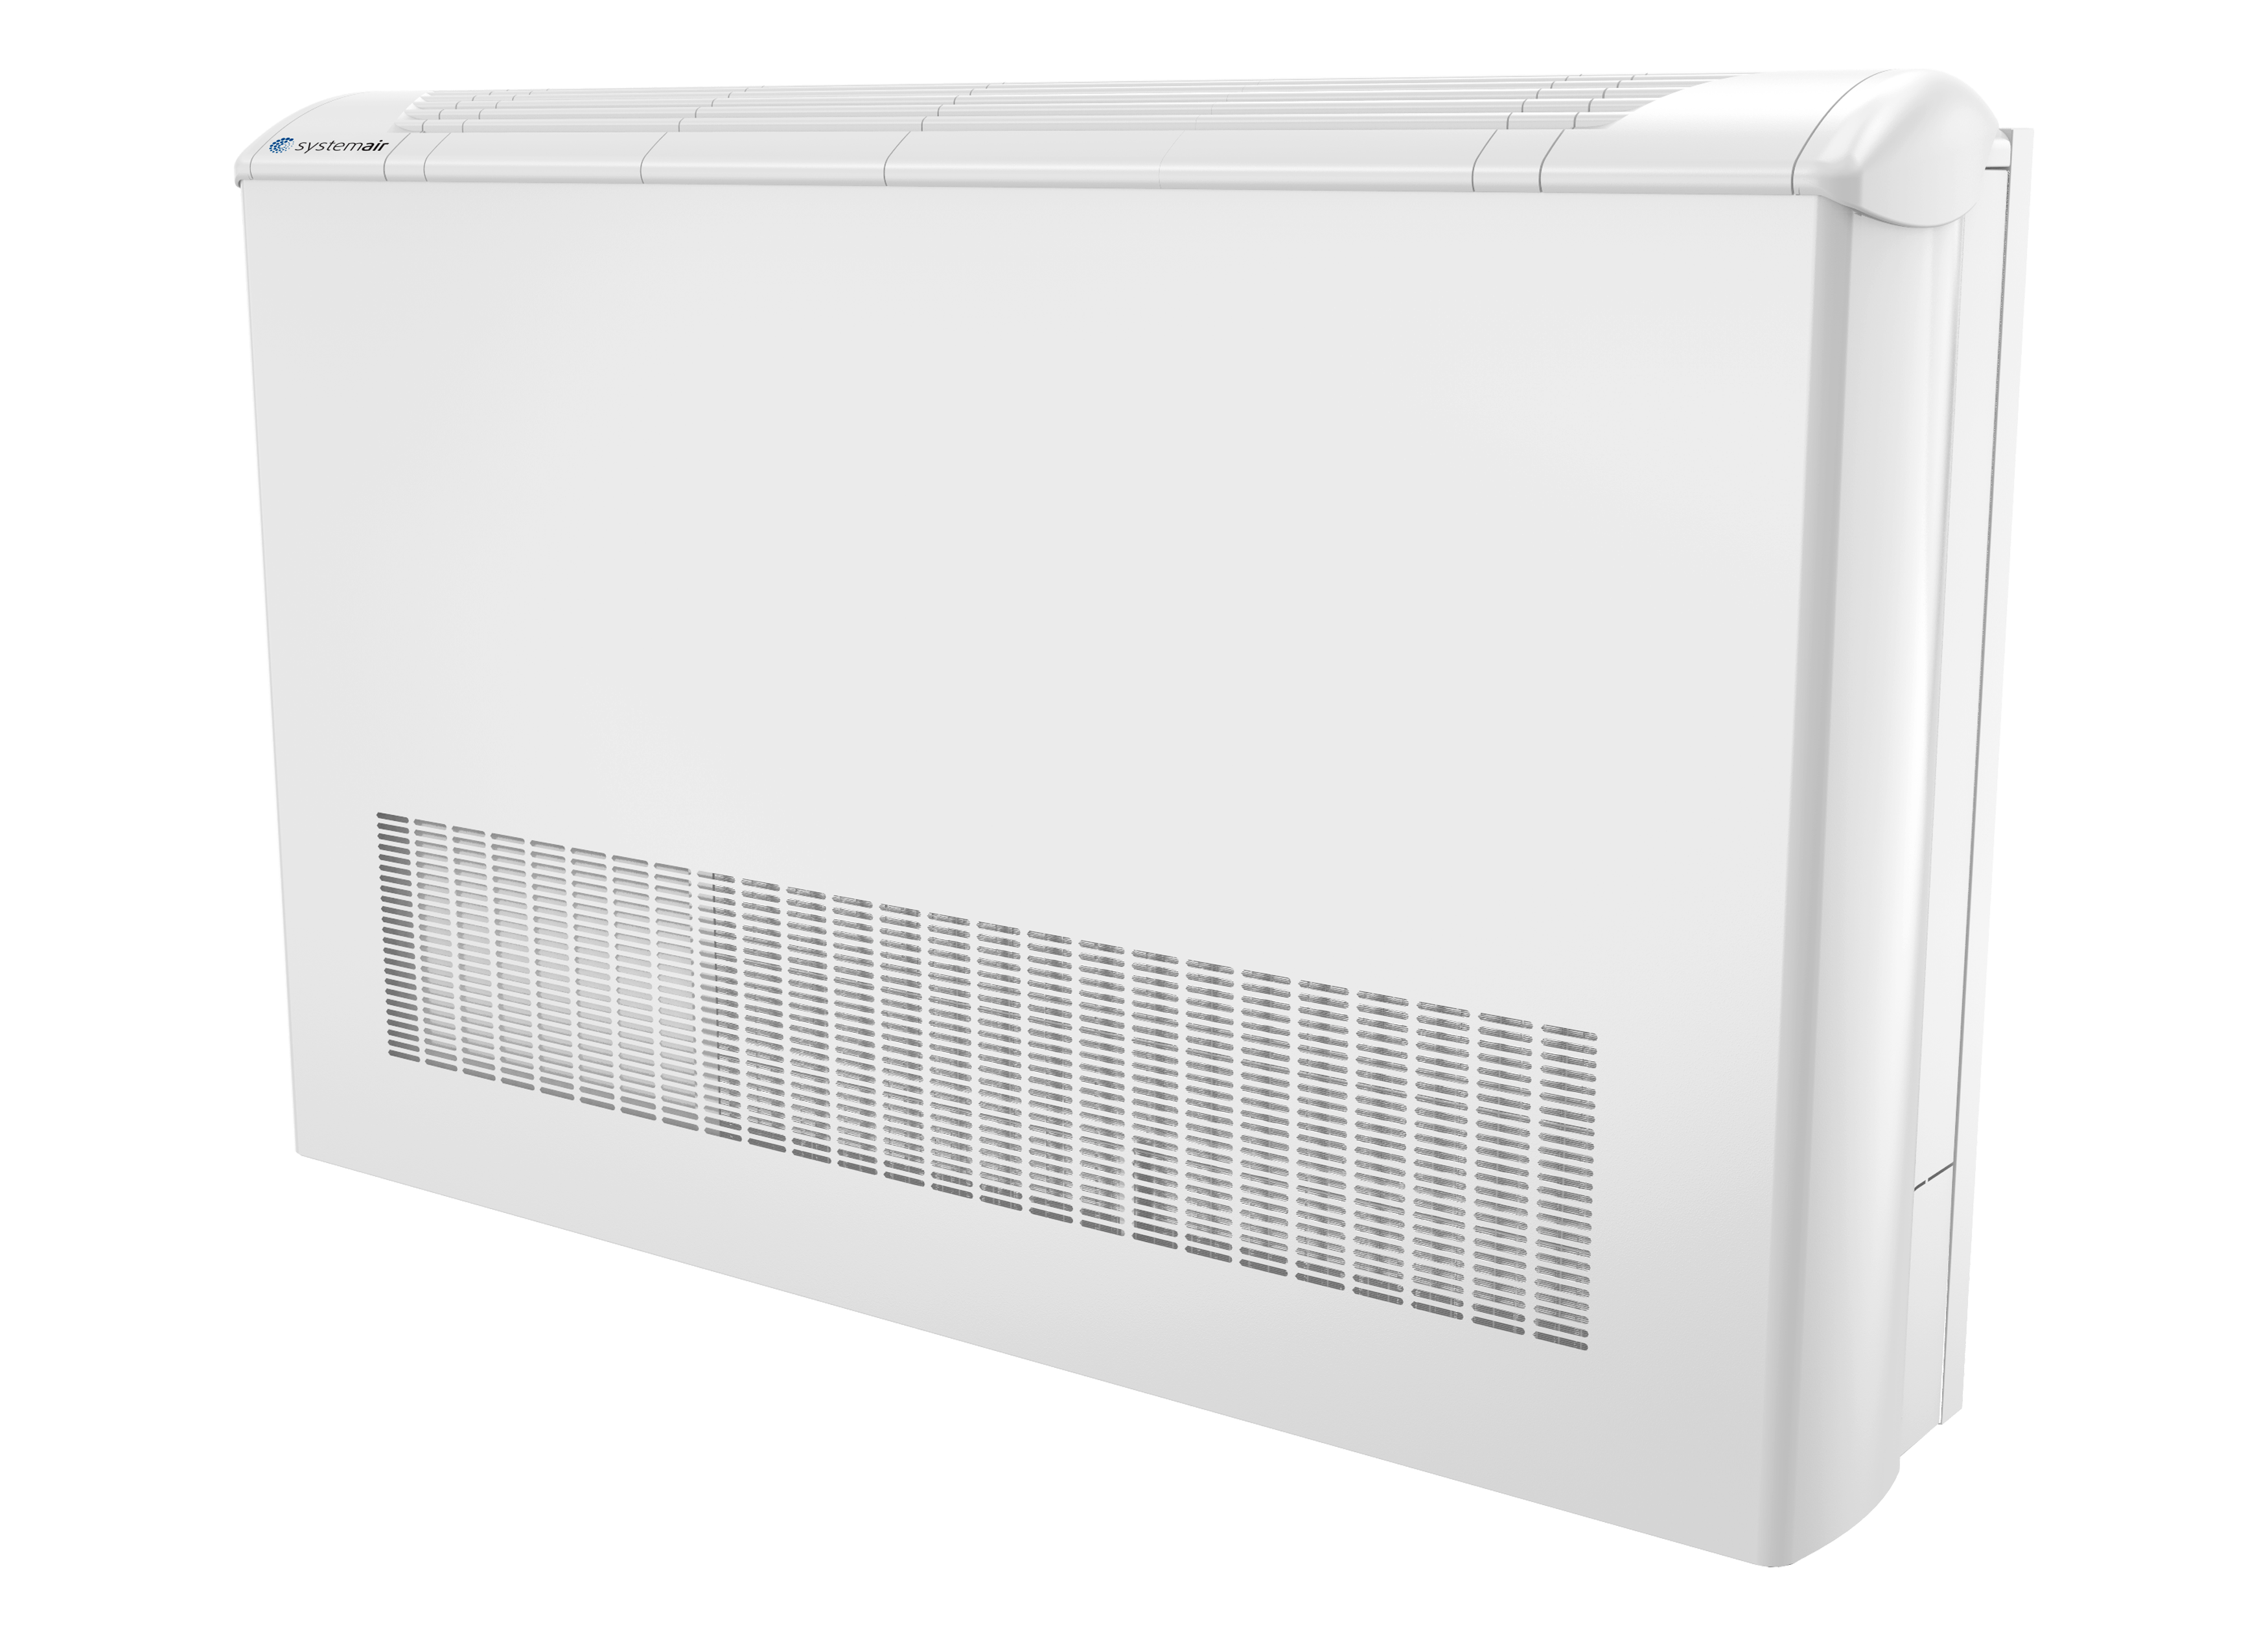 SYSCW-AR R513A - Υδρόψυκτες αυτόνομες Αντλίες Θερμότητας - Κλιματισμός - Products - Systemair